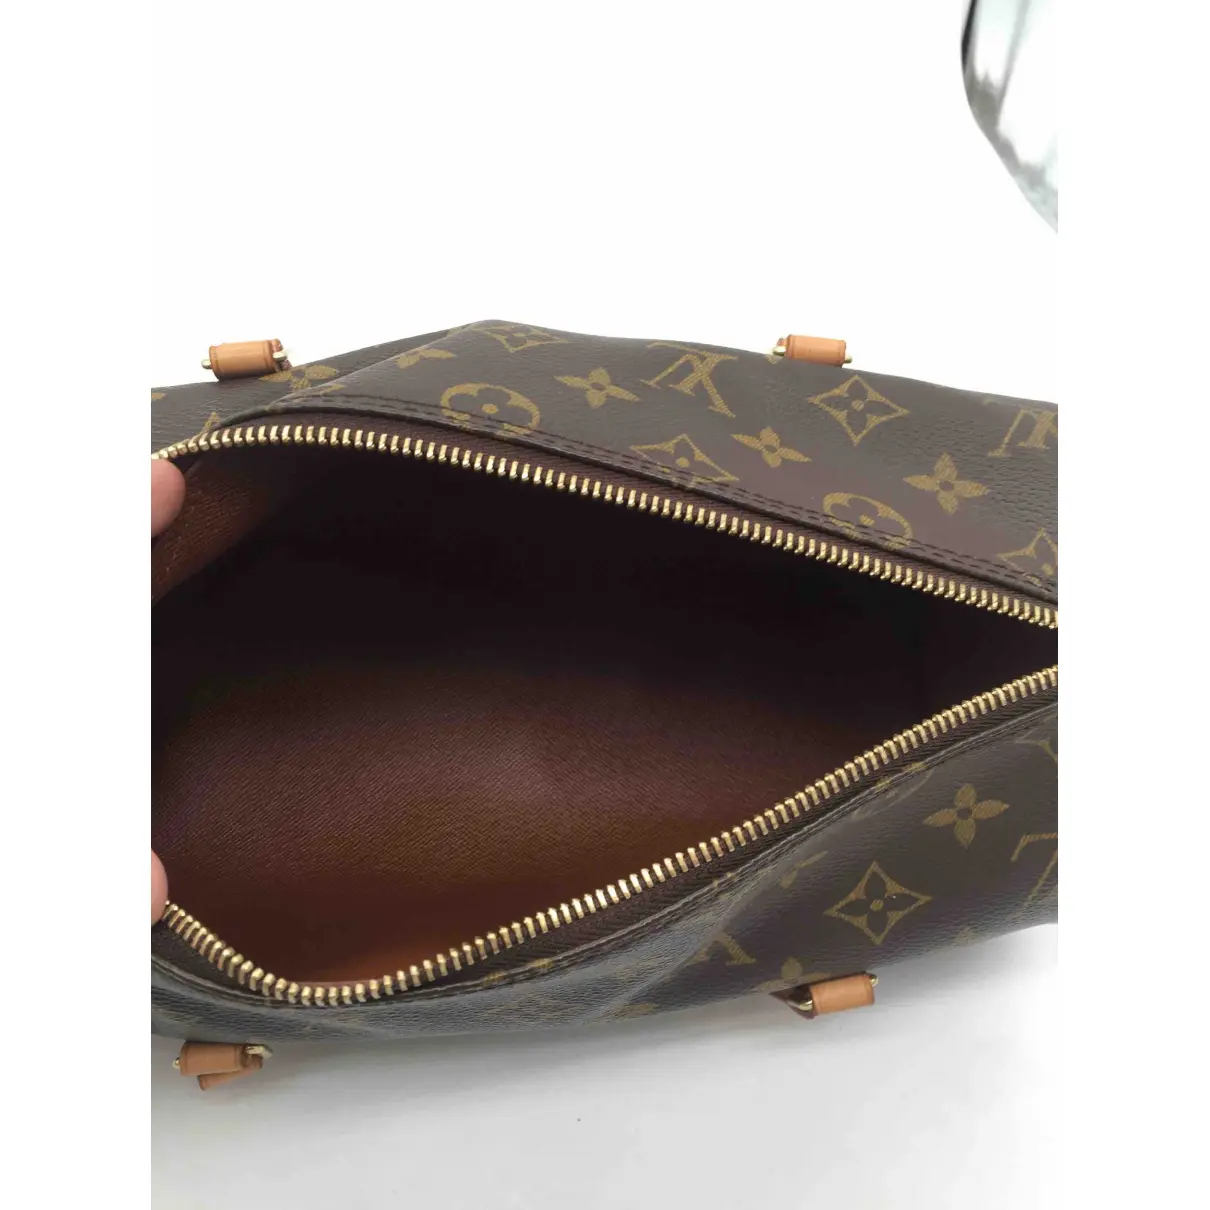 Papillon cloth handbag Louis Vuitton - Vintage